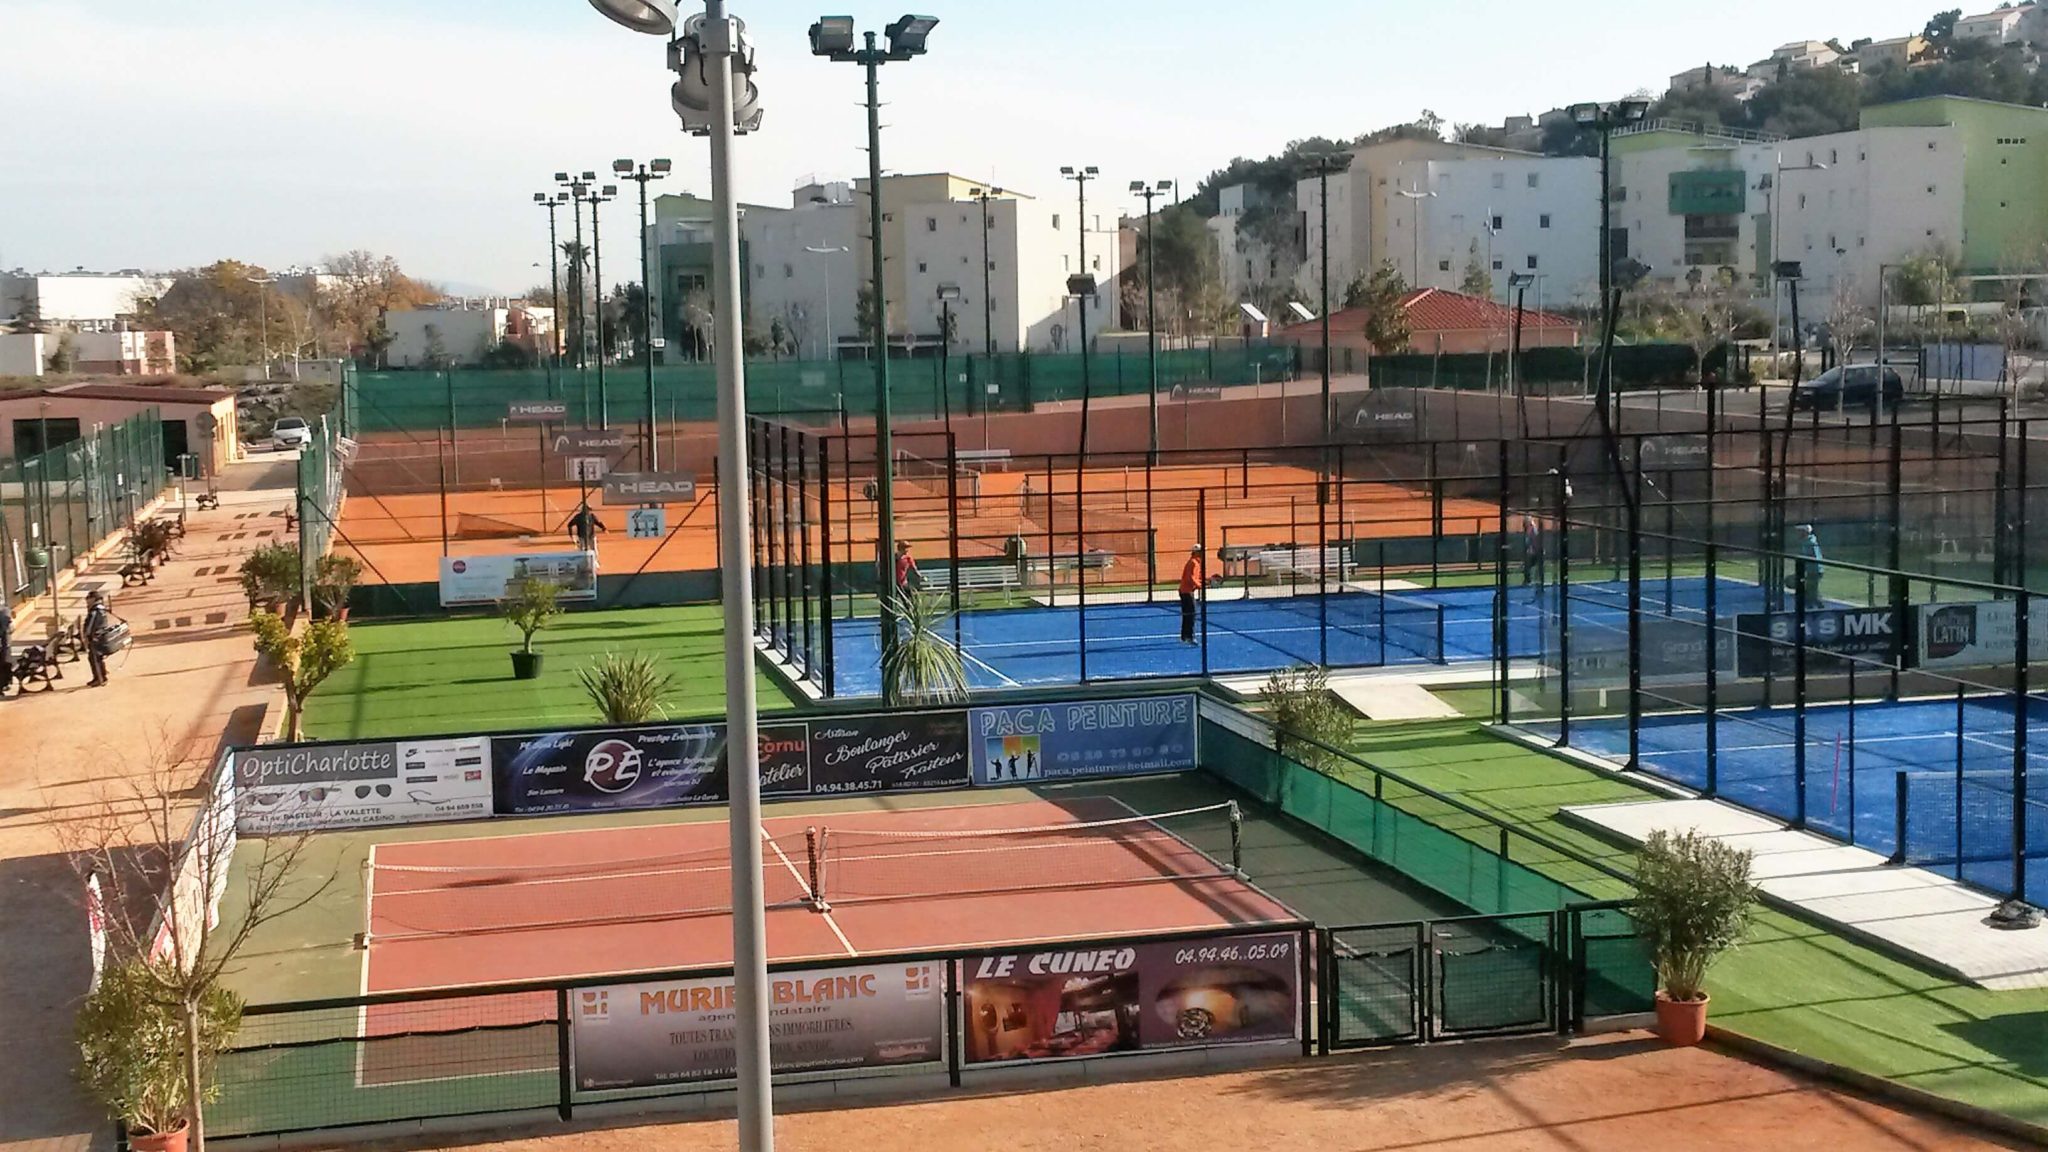 El club de tenis Toulonnais en modo competición padel